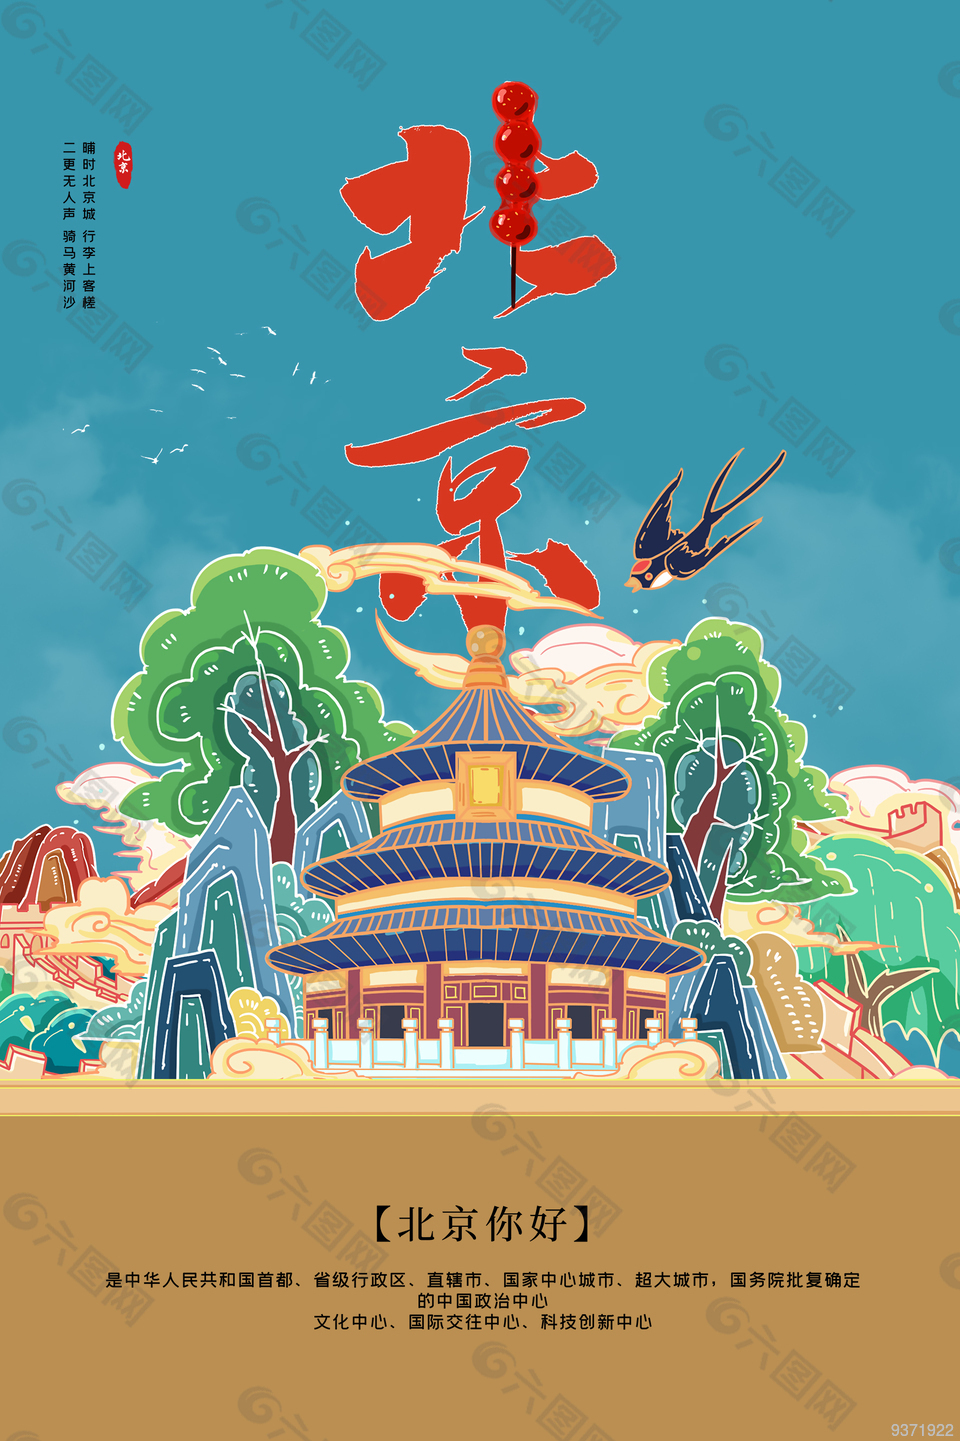 北京天坛地标建筑宣传海报